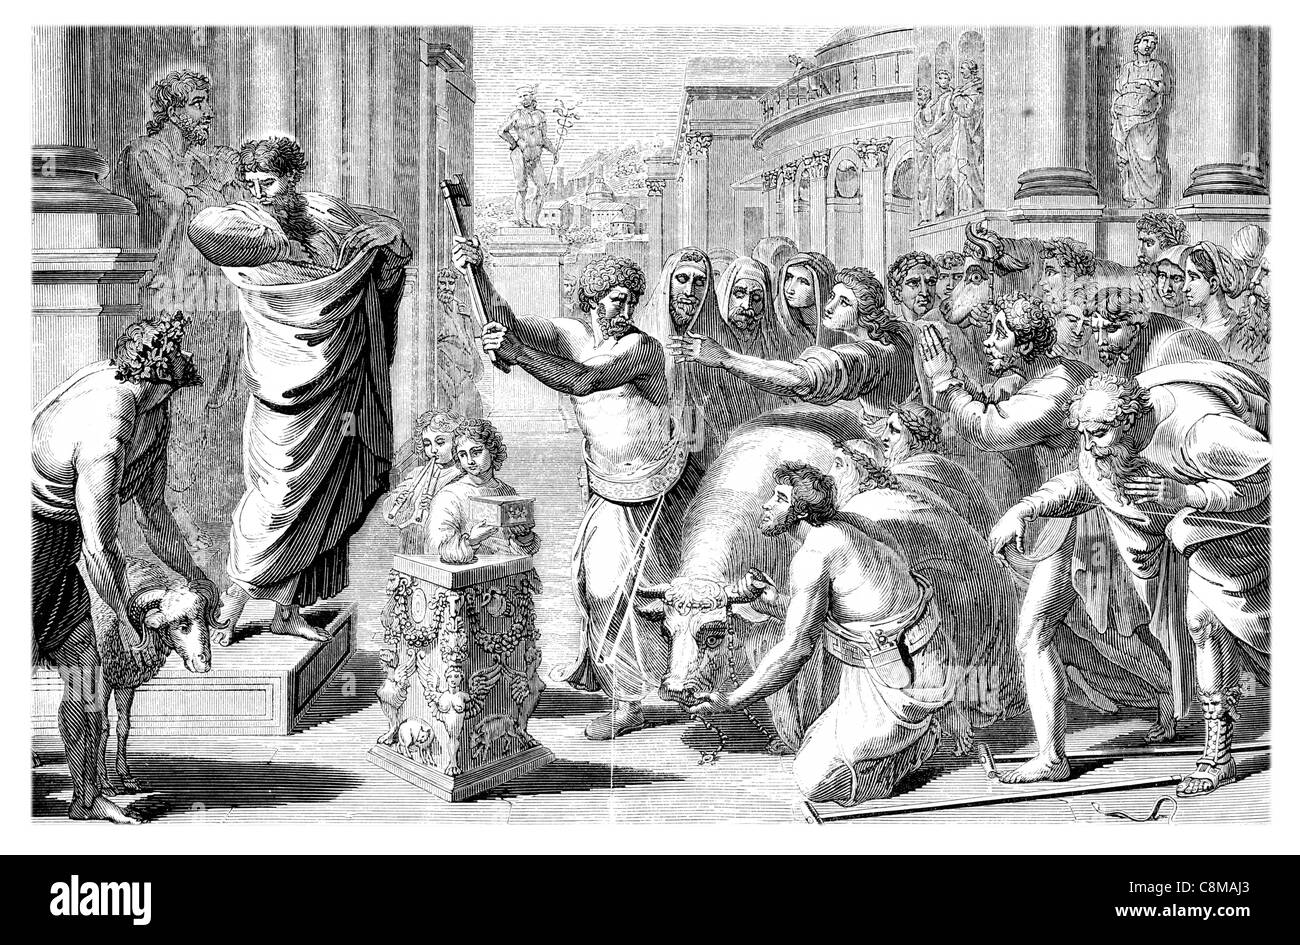 The Sacrifice at Lystra Paul cures cure cured cripple Barnabas gods god sacrifice crowd sacrificial ax Raphael Cartoons Stock Photo